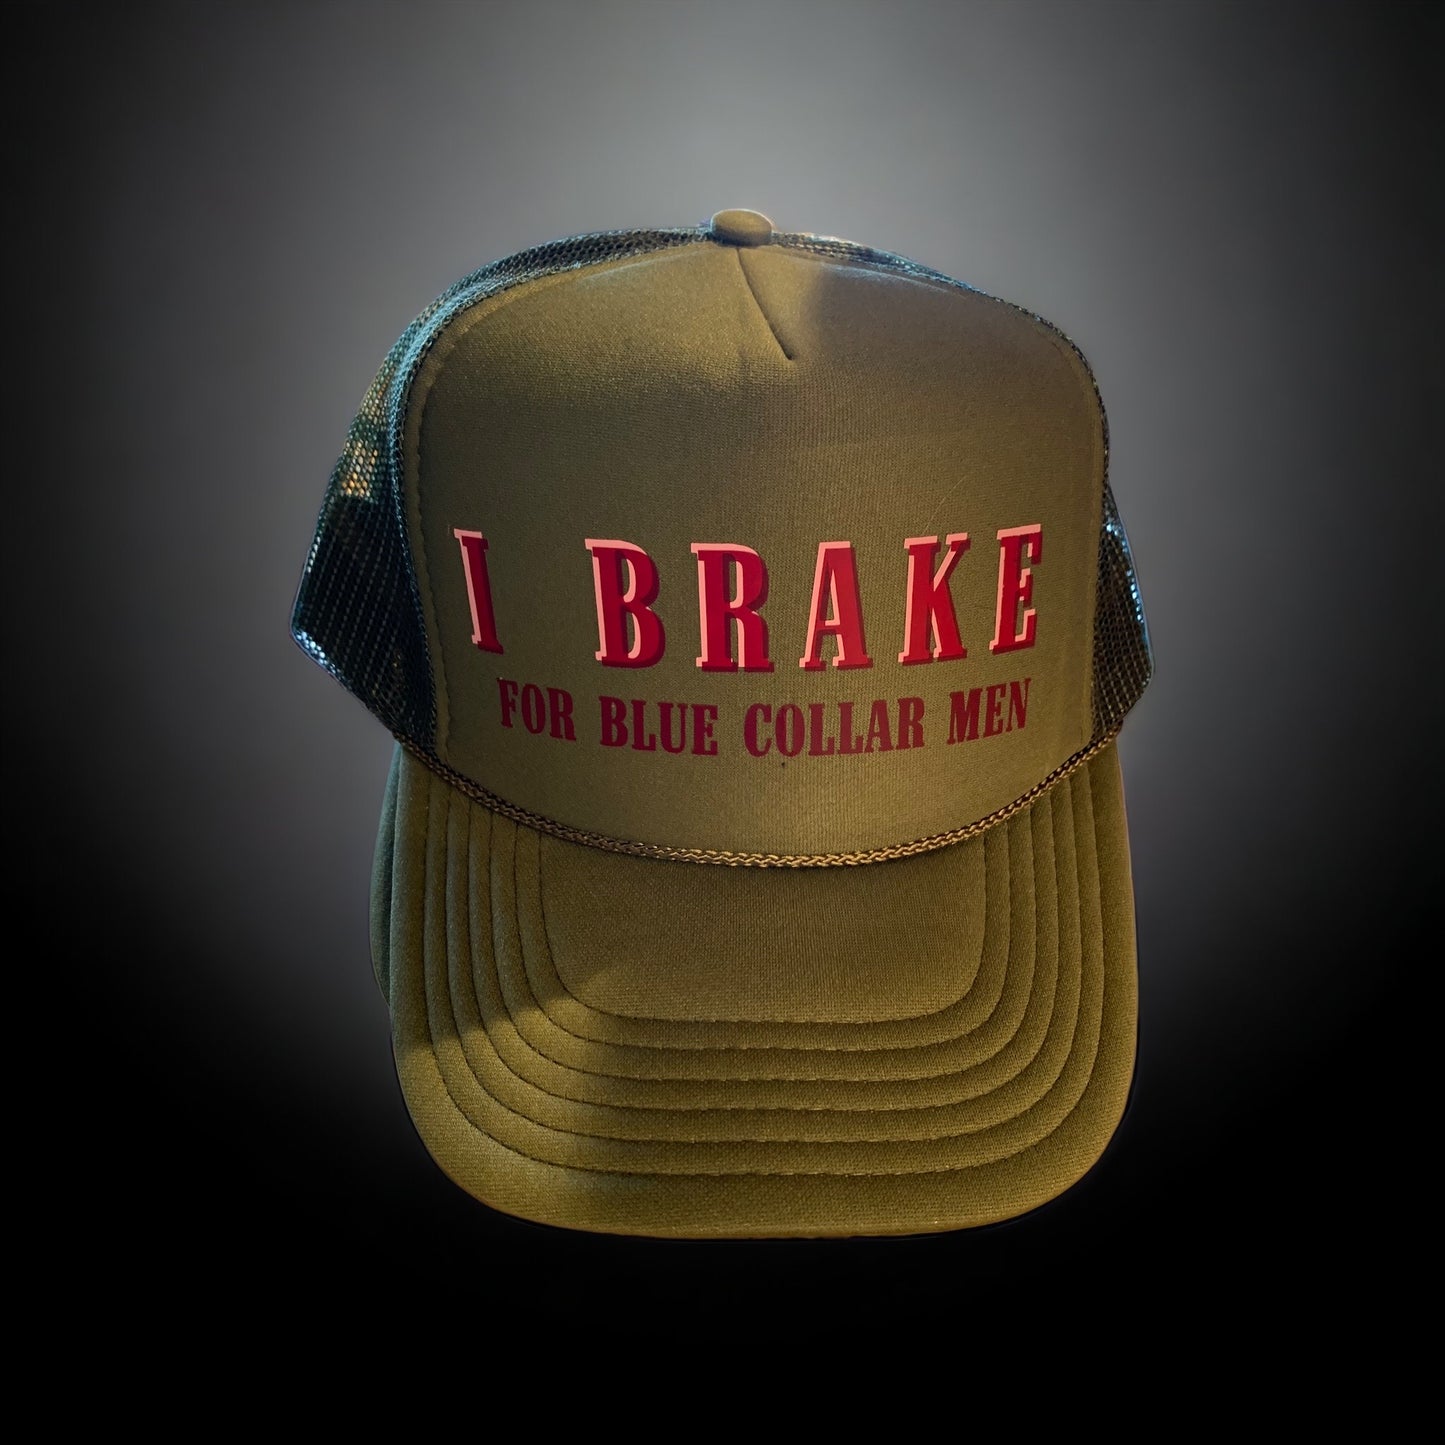 "I brake for blue collar men" Trucker Hat